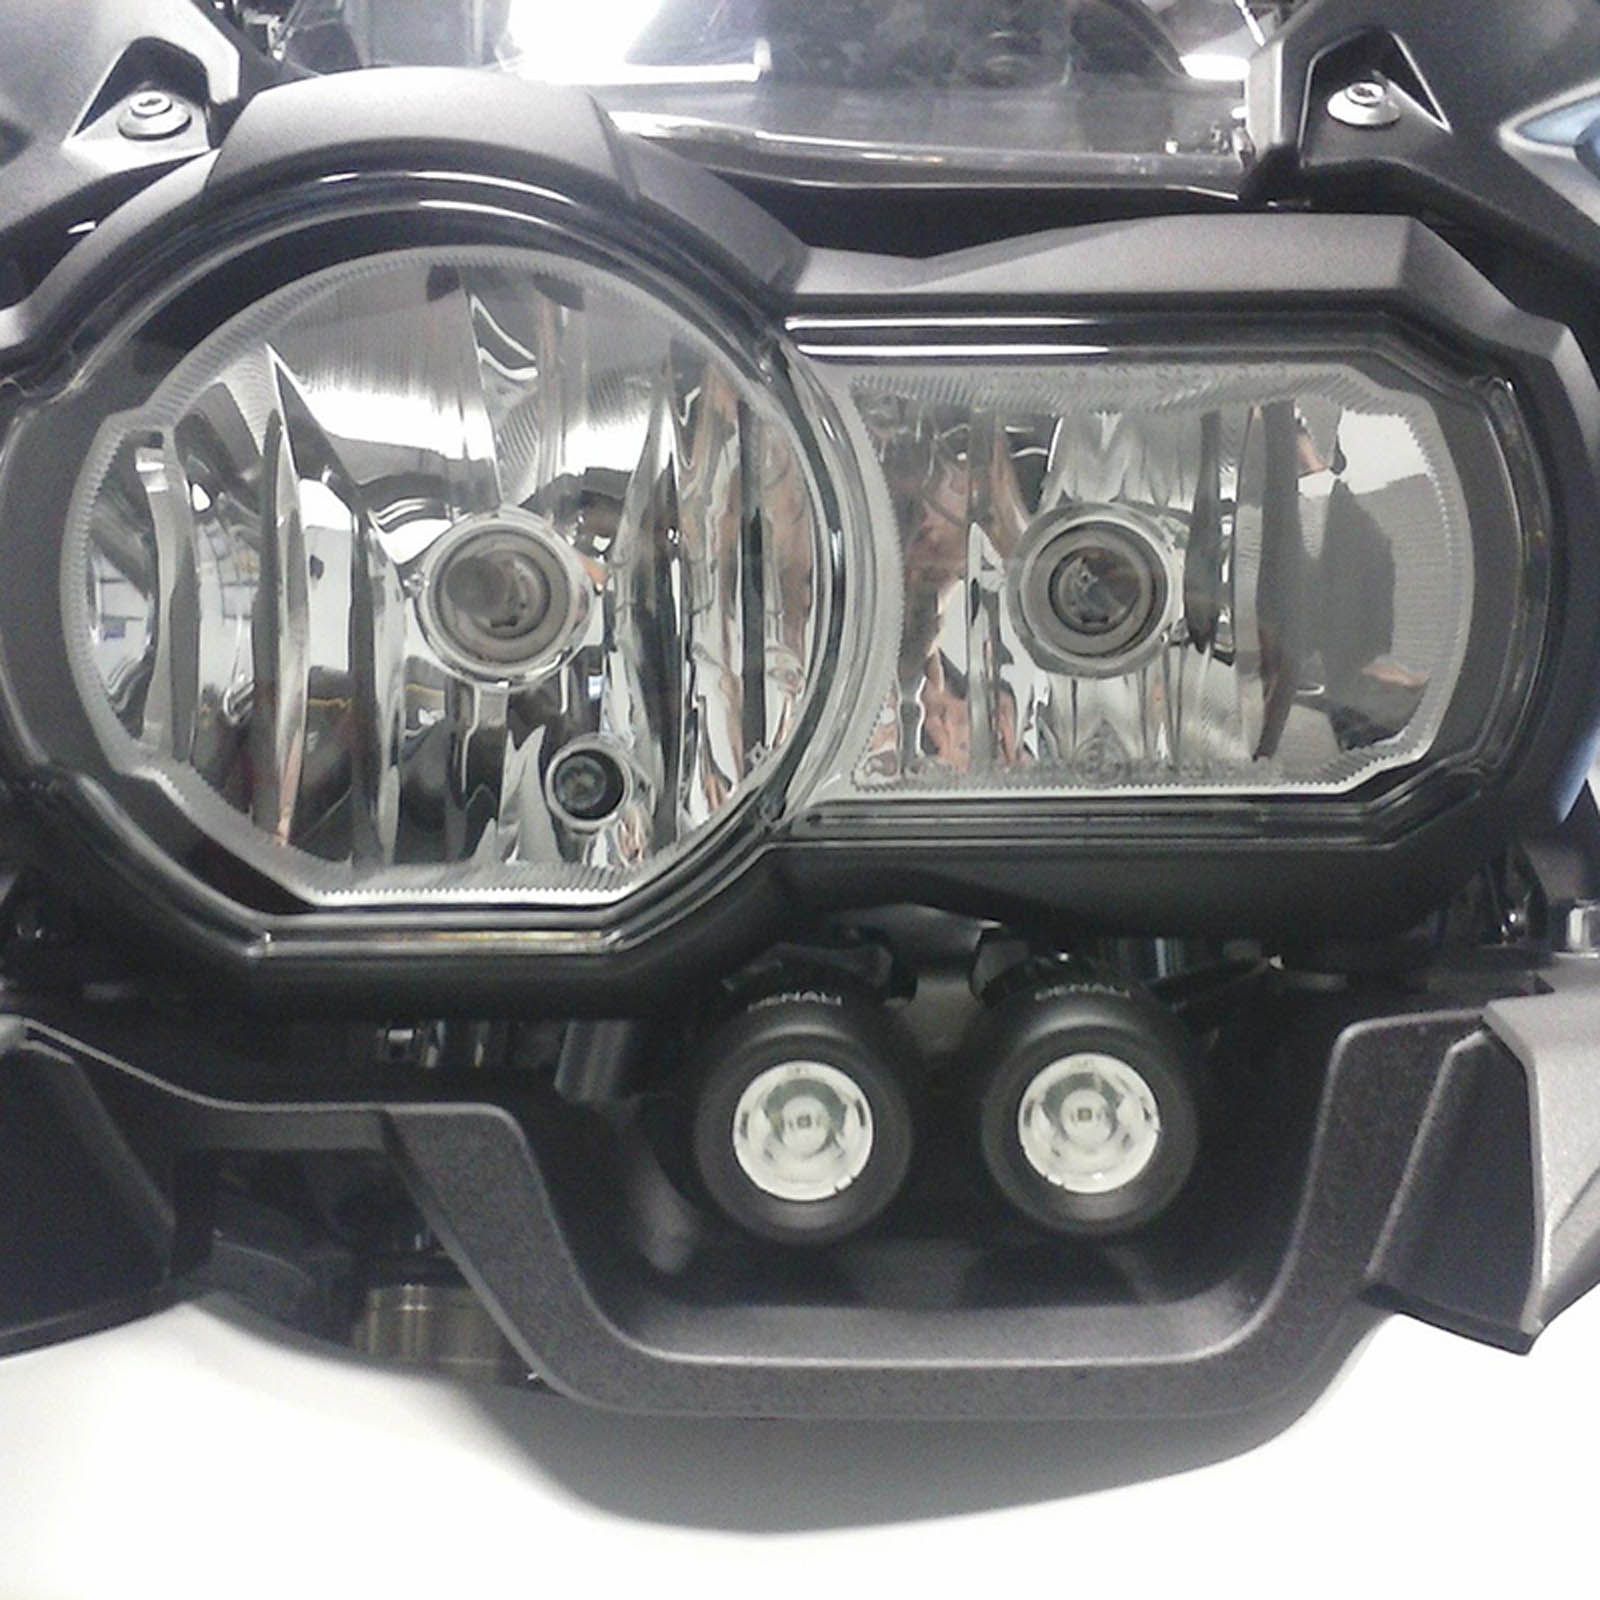 DENALI DM 2.0 LED Light Kit Flush Fairing Mount For BMW R1200GS #DELAHDM0710000